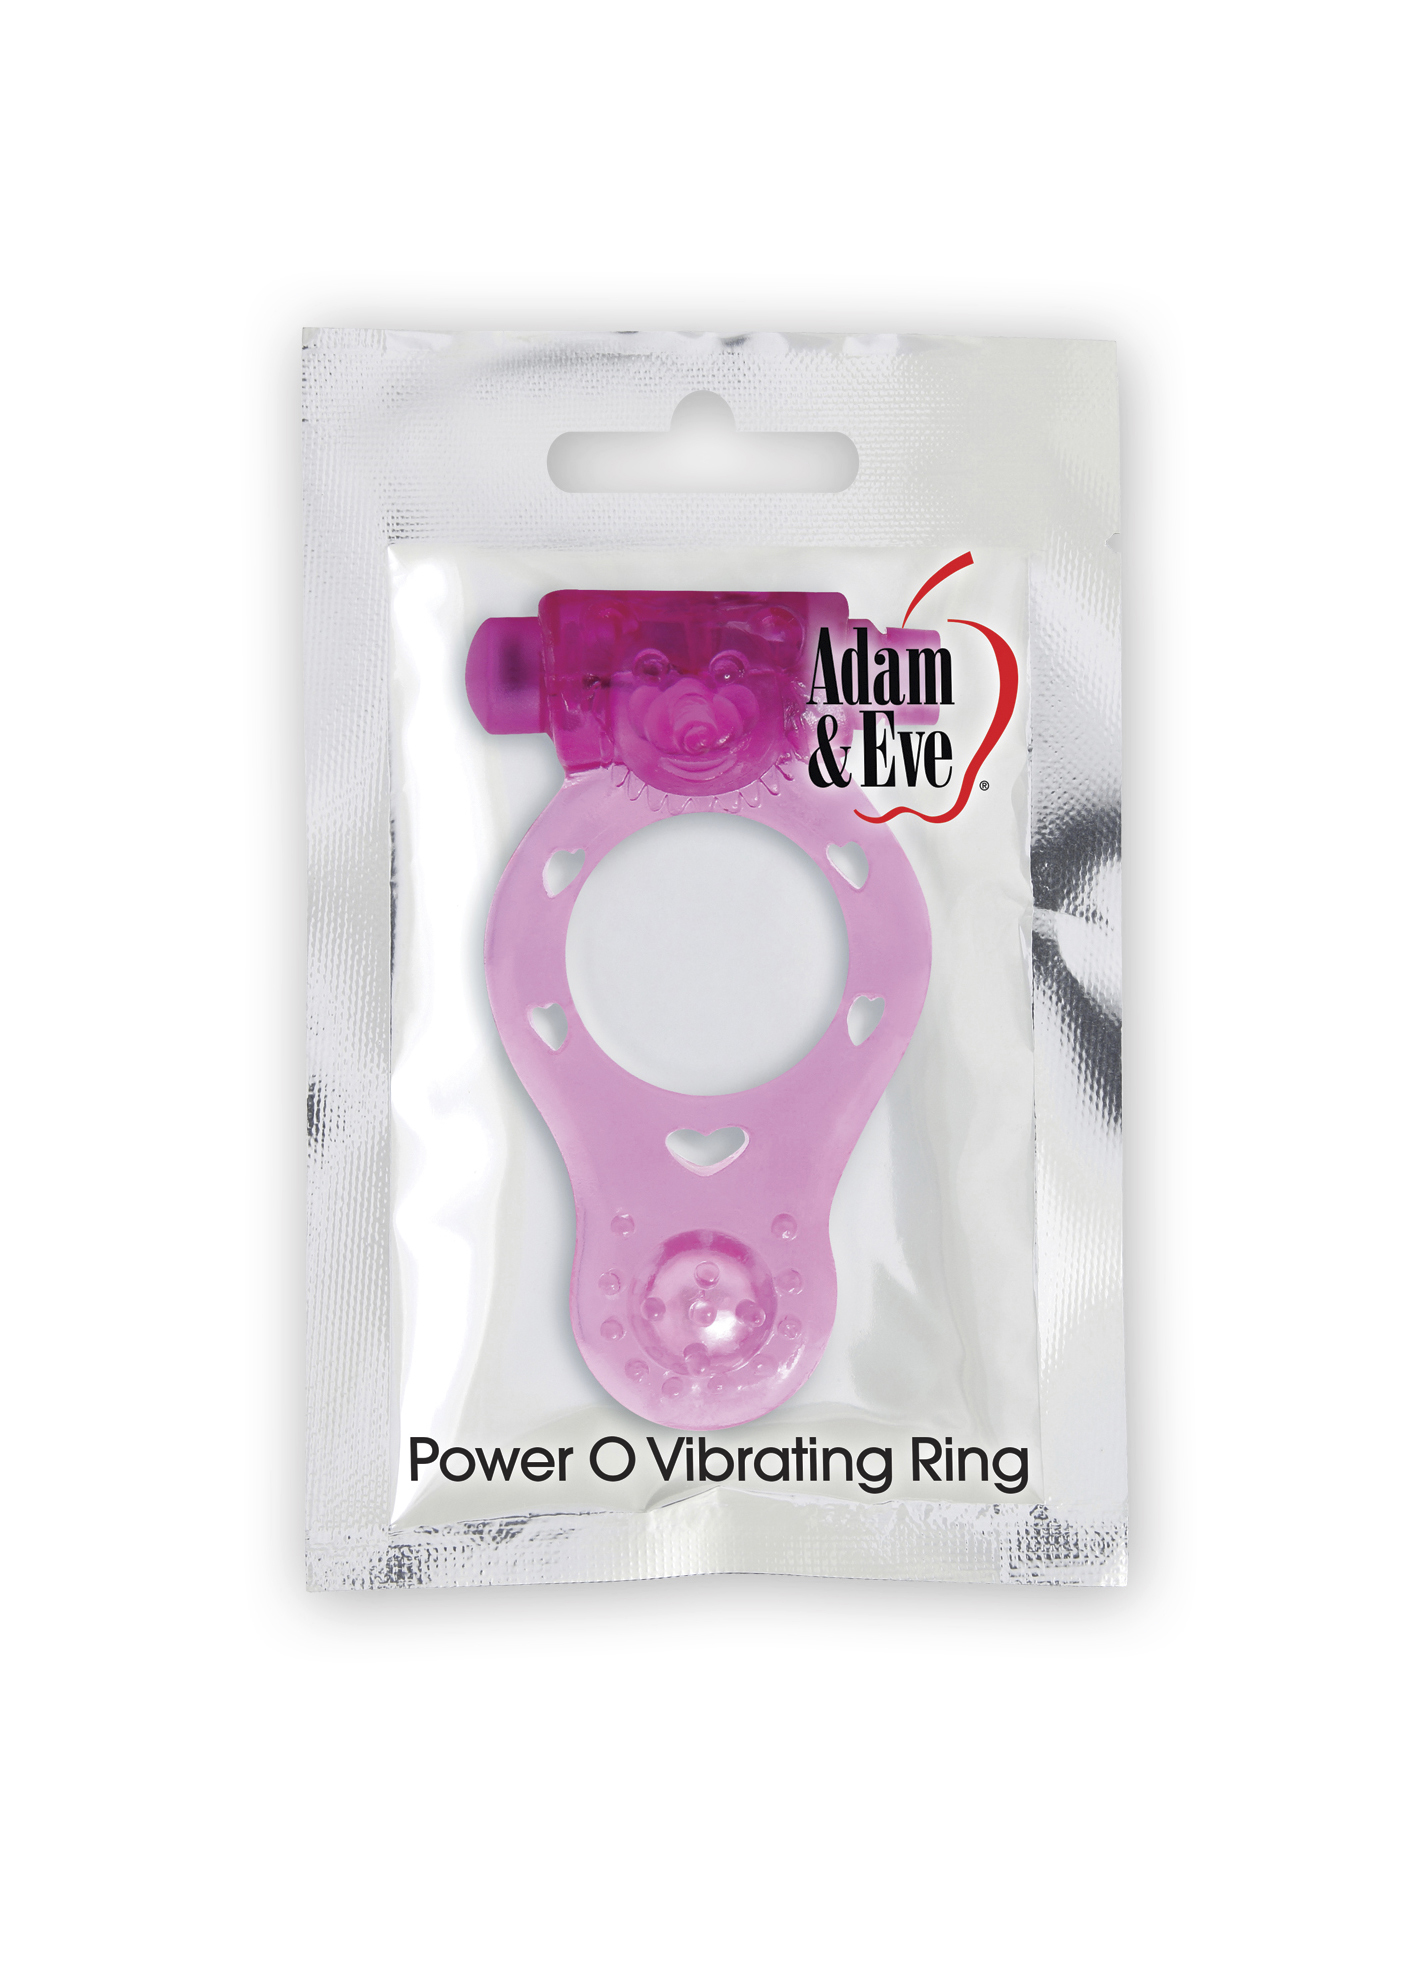 Power-O-vibrating-ring-mockbox.jpg